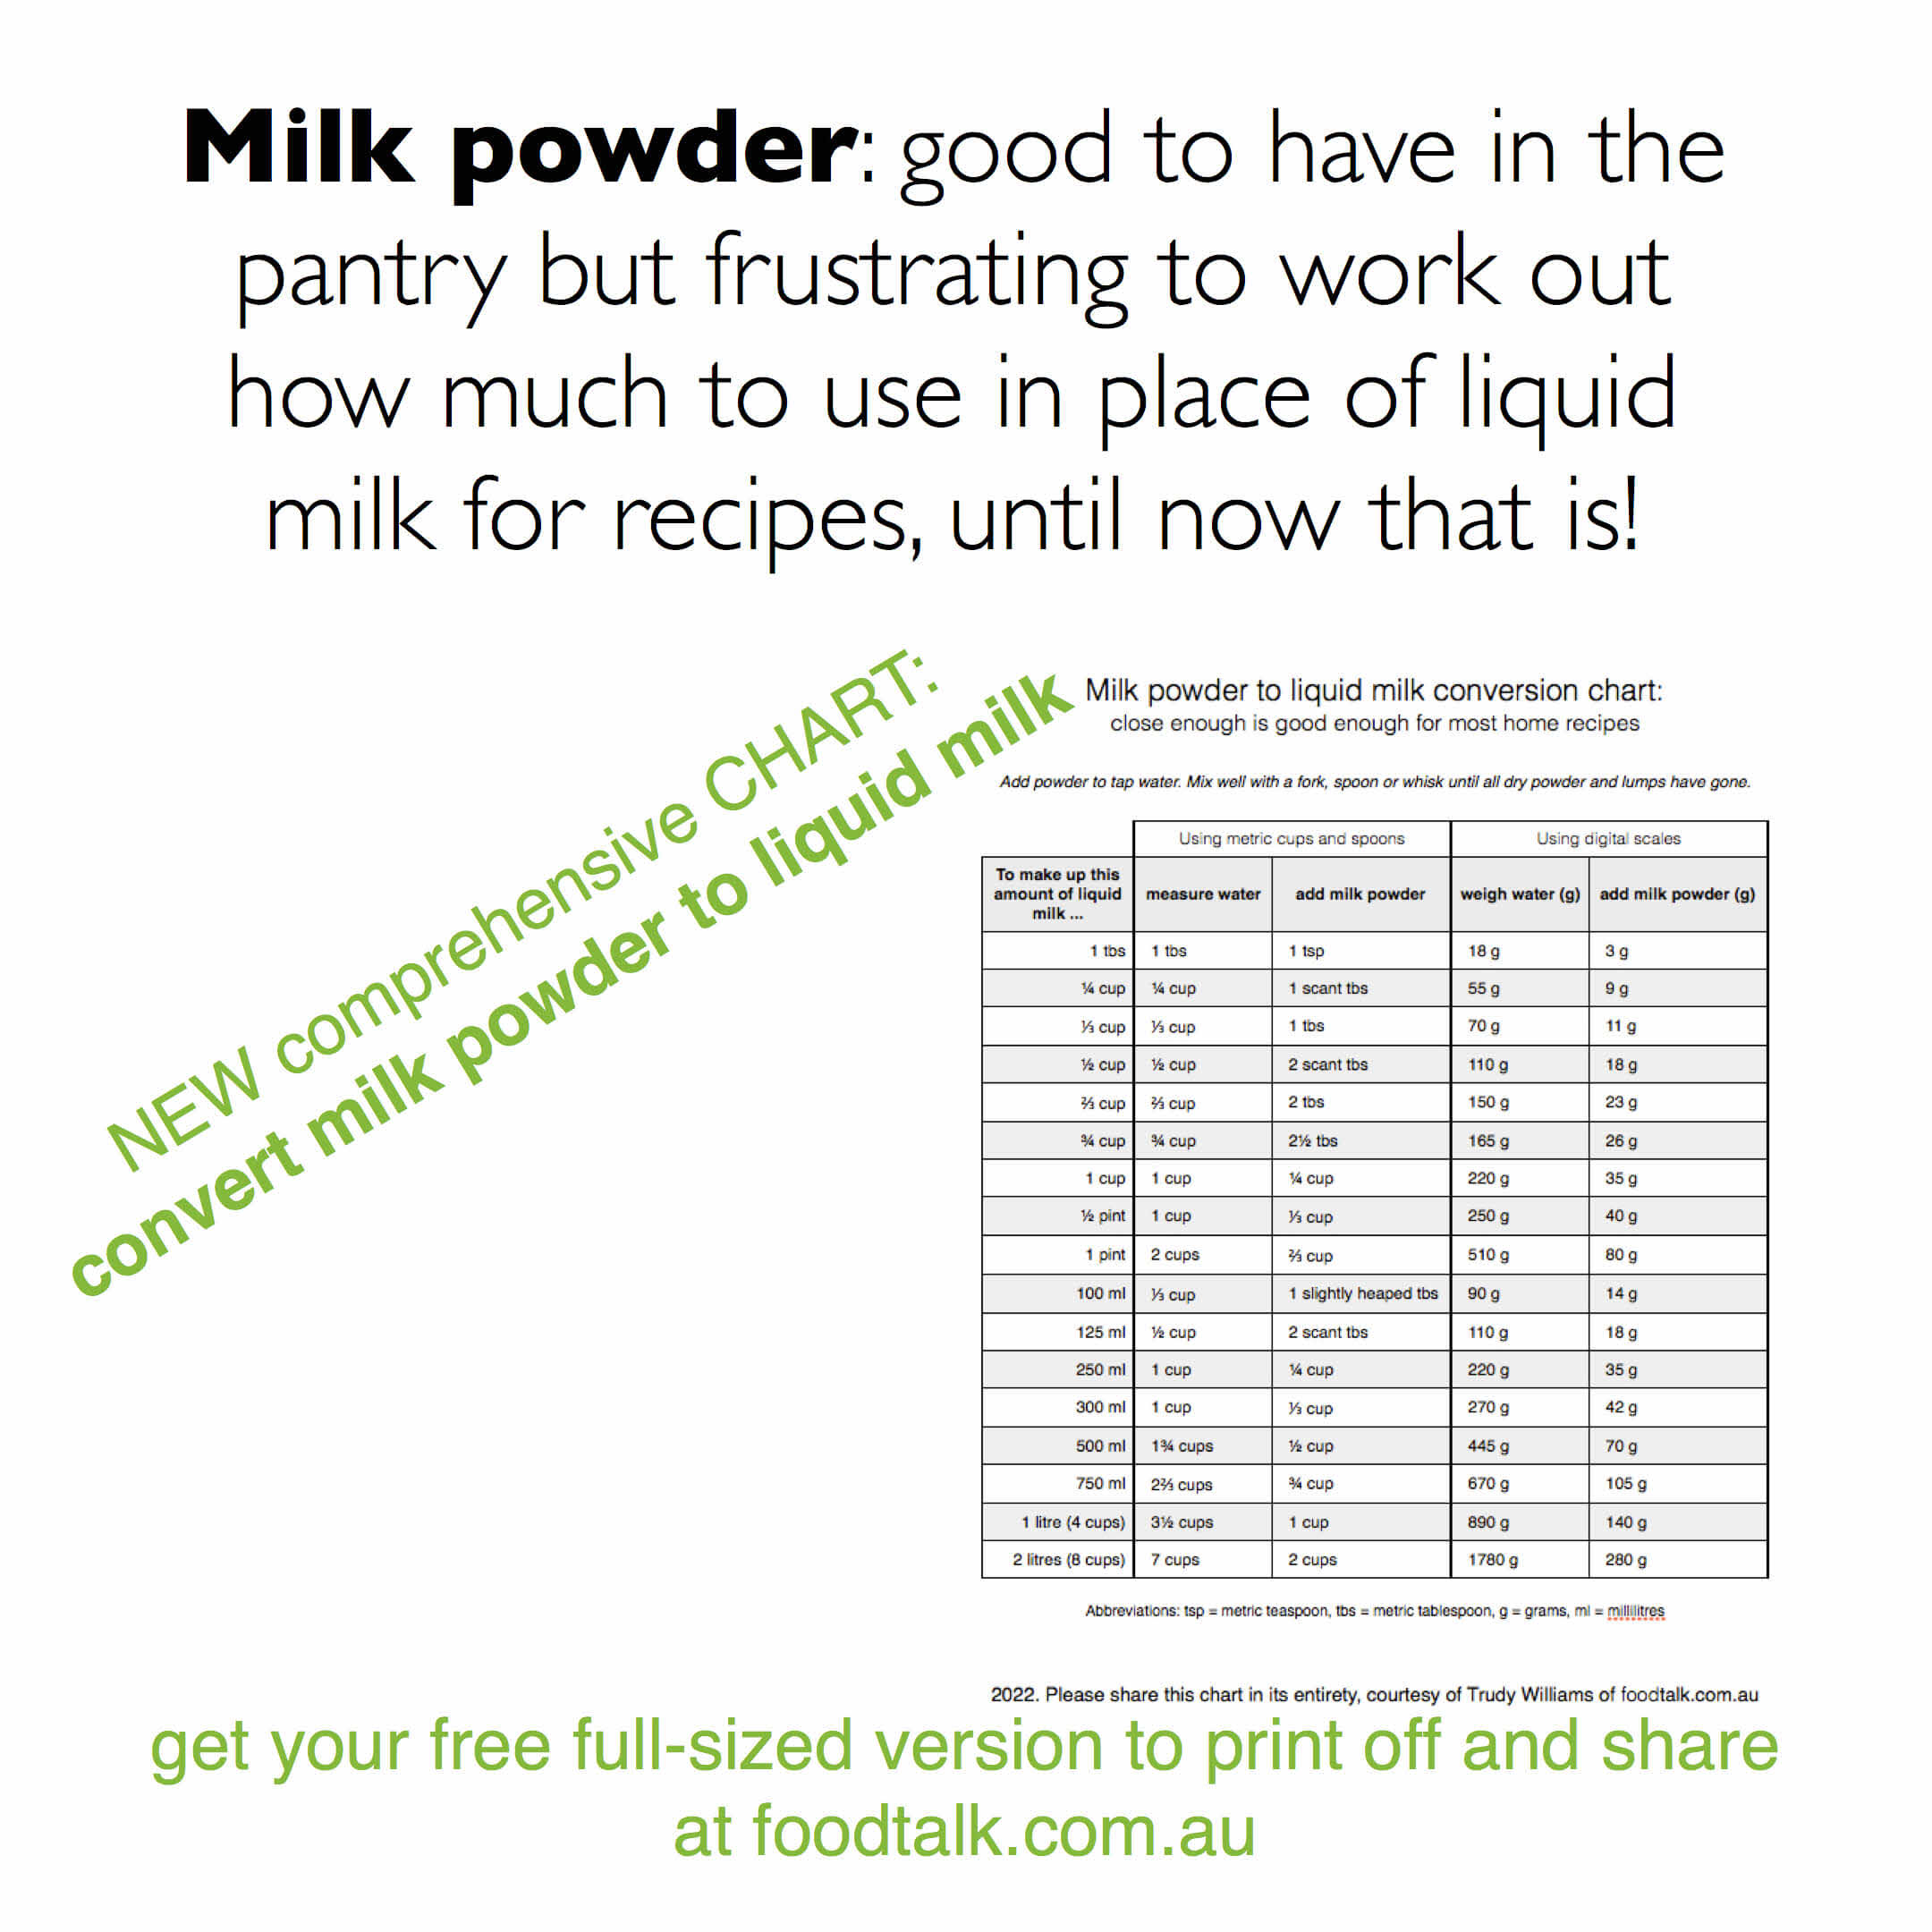 How much milk powder is needed to make liquid milk?